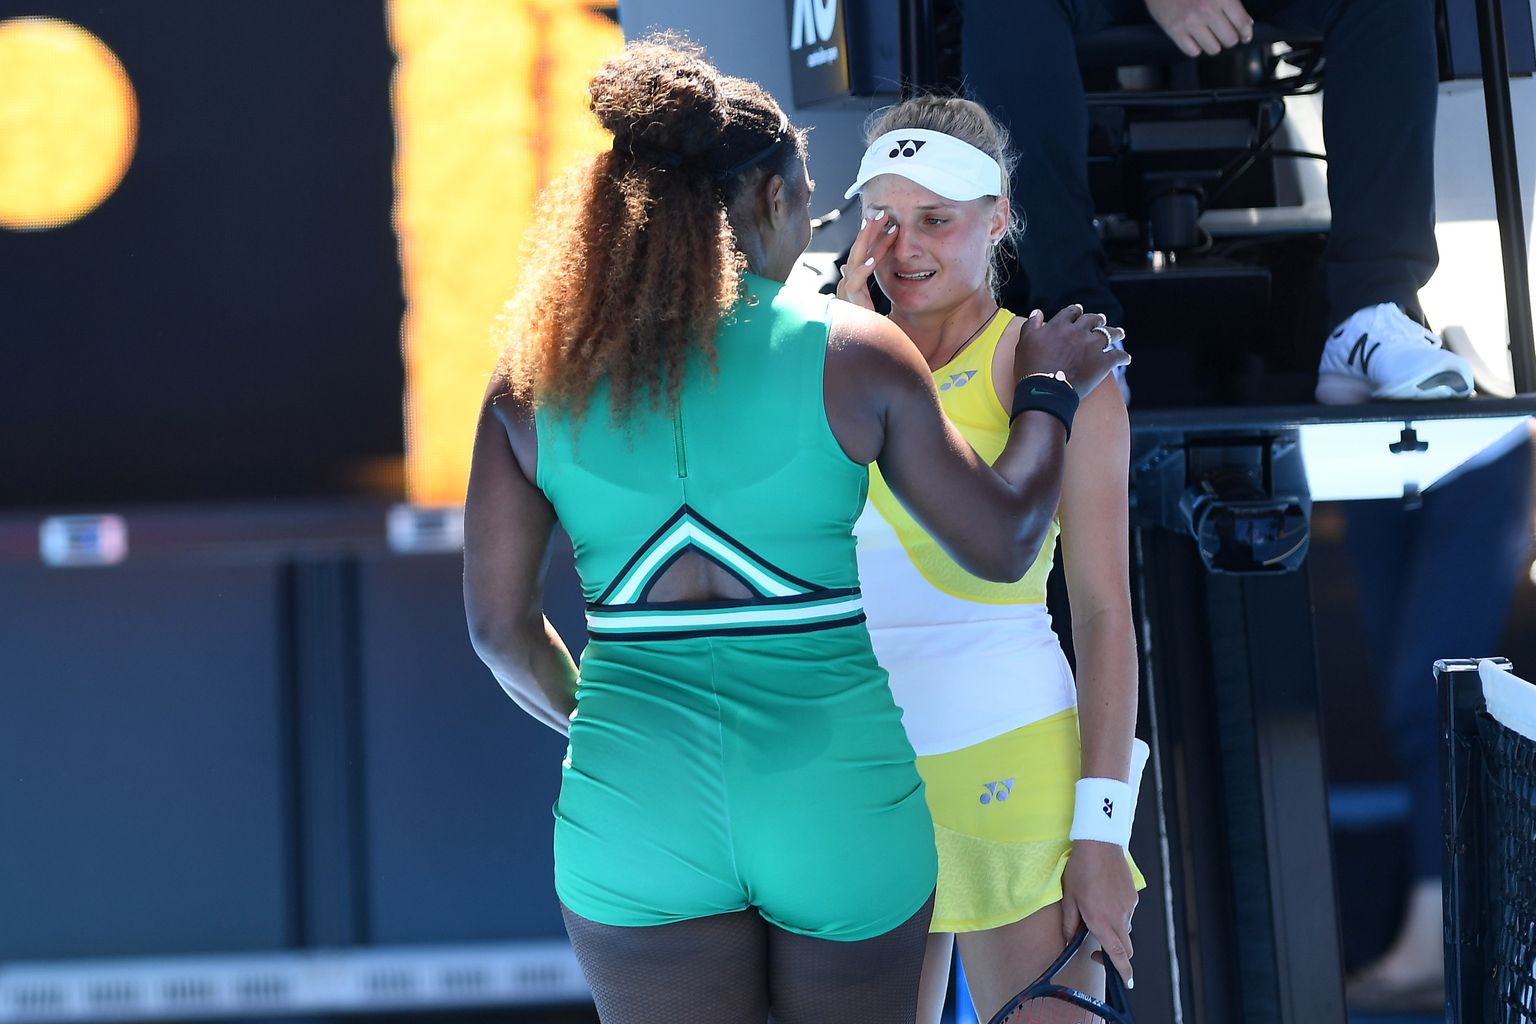 18-aastane ukrainlanna Dajana Jastremska polnud veel sündinudki, kui Serena Williams võitis 1999. aastal oma esimese slämmiturniiri võidu. Täna oli aga see päev, mil täitus Jastremska lapsepõlveunistus – mängida ühel päeval oma iidoli Williamsi vastu –, ning olenemata tulemusest tõi see noorukile pisarad silma.